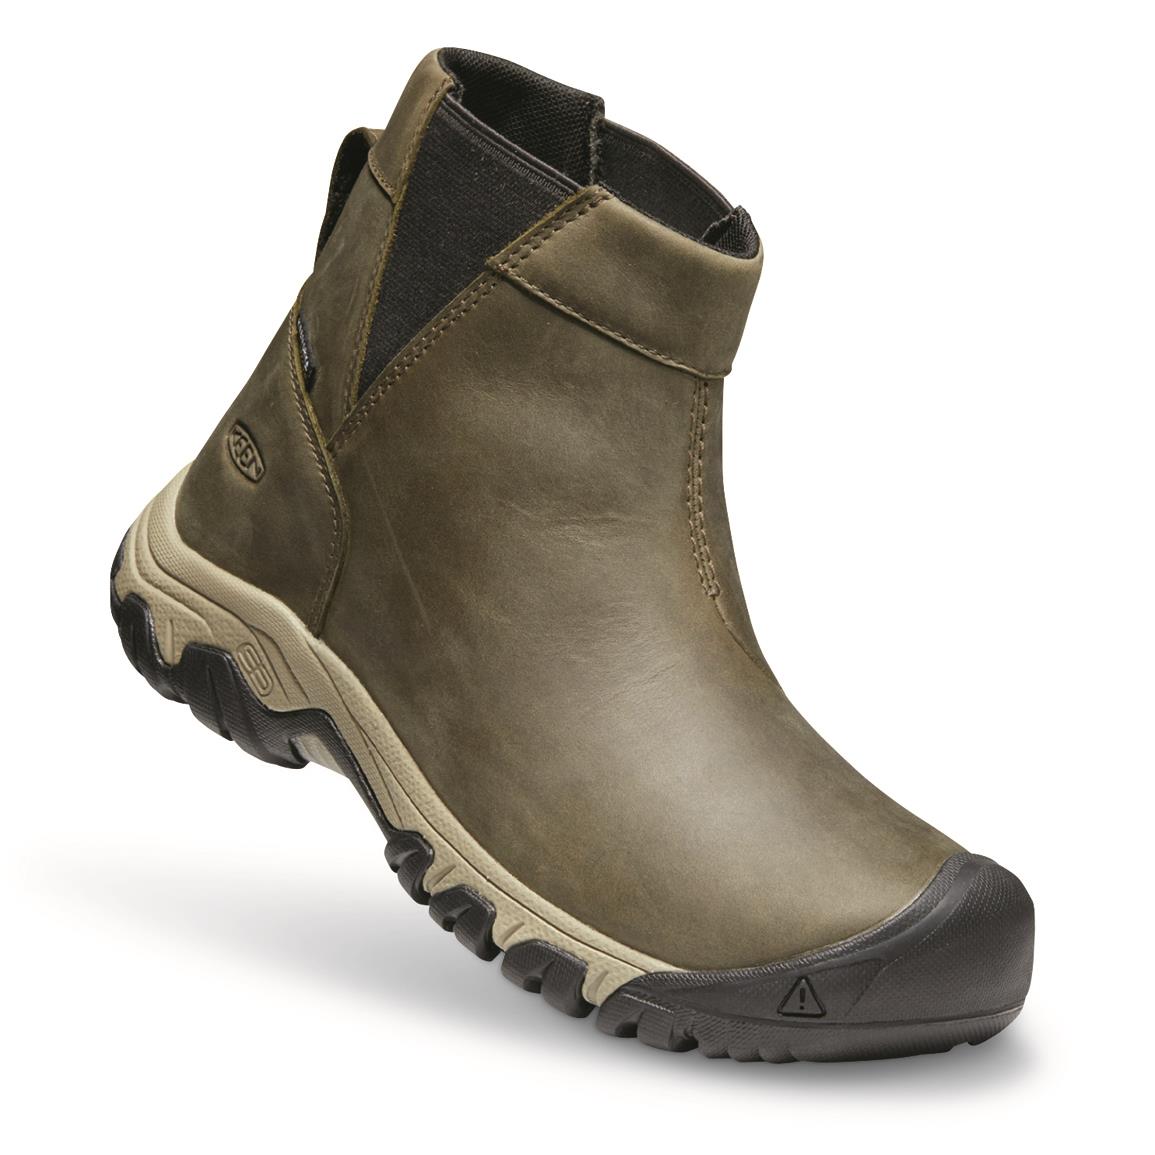 KEEN Women's Greta Chelsea Waterproof Insulated Boots, 200 Grams, Olive/timberwolf